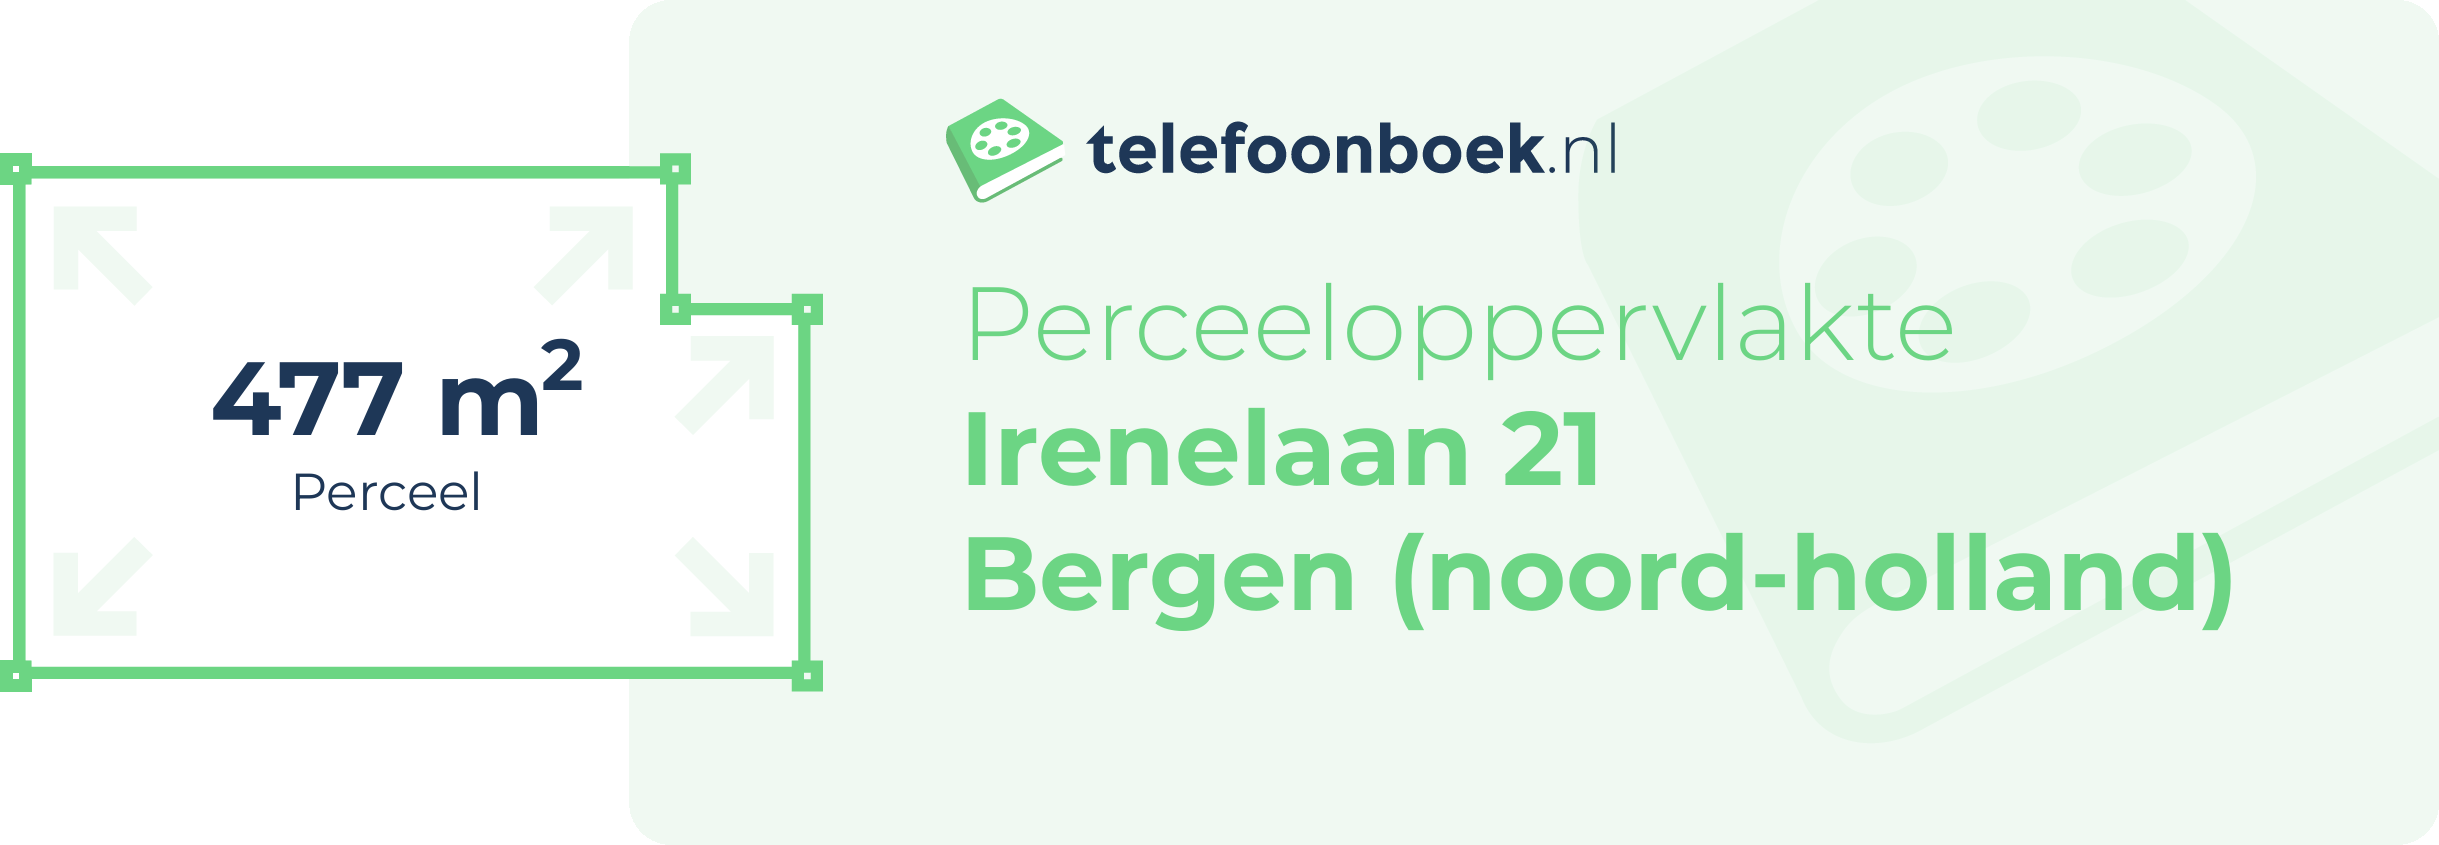 Perceeloppervlakte Irenelaan 21 Bergen (Noord-Holland)